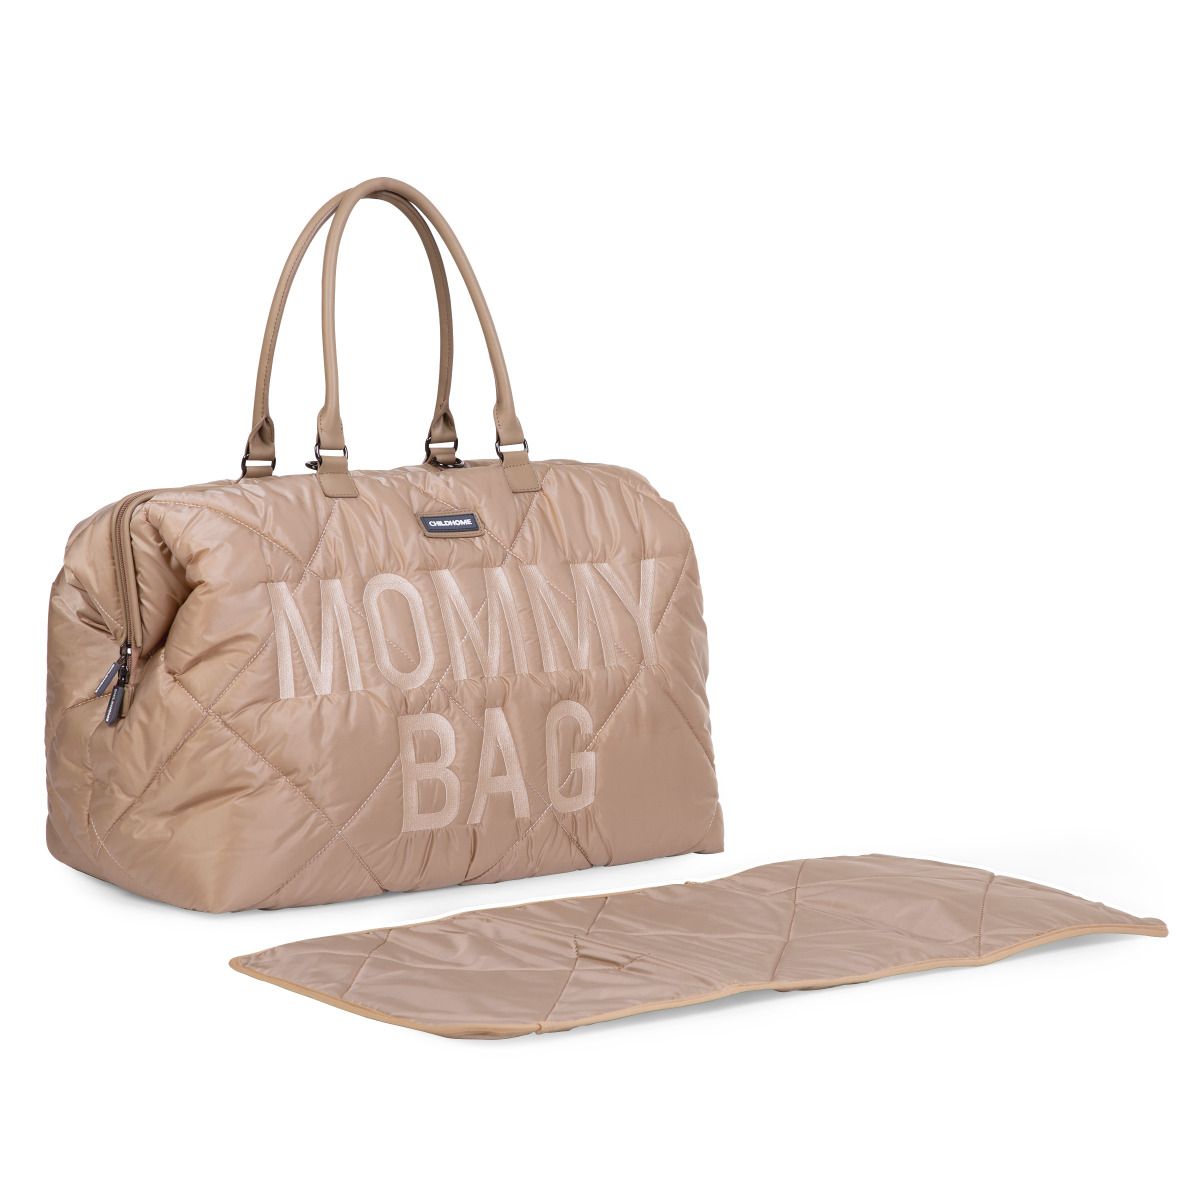 Сумка Childhome Mommy bag, дутая, бежевая (CWMBBPBE) - фото 2